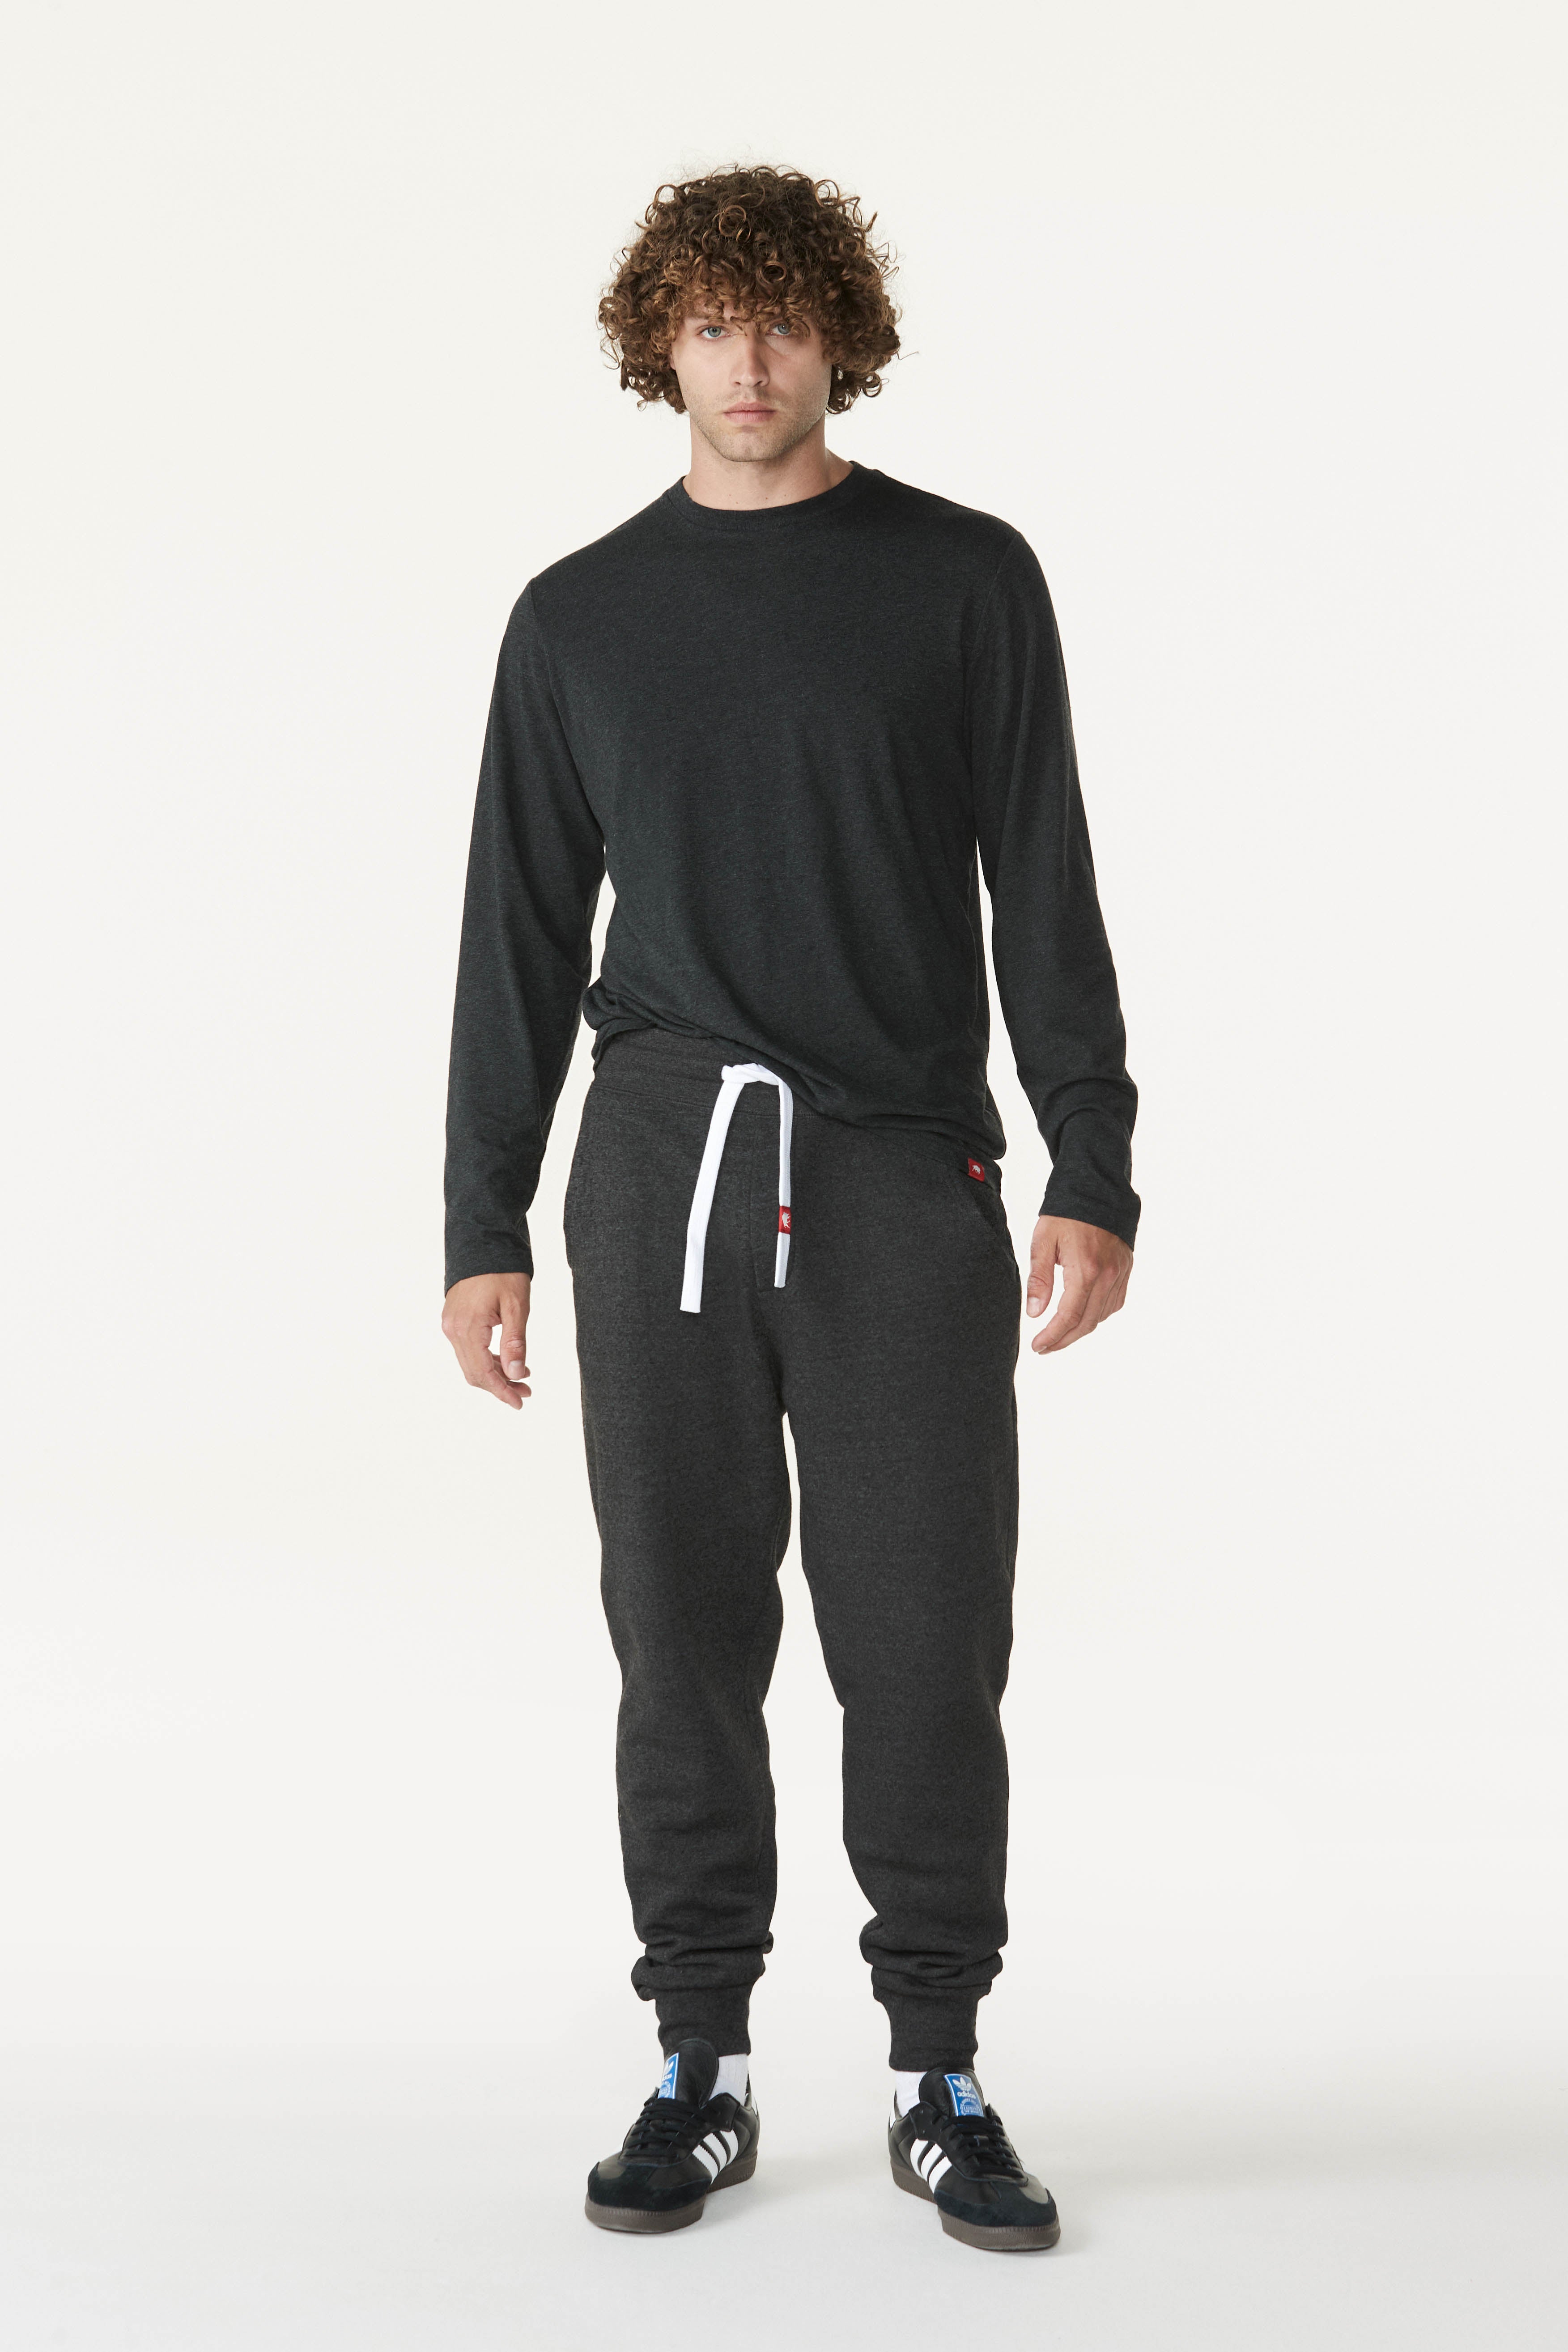 Sportiqe Men's Long Sleeve Comfy T-Shirt - Soft Jersey Knit